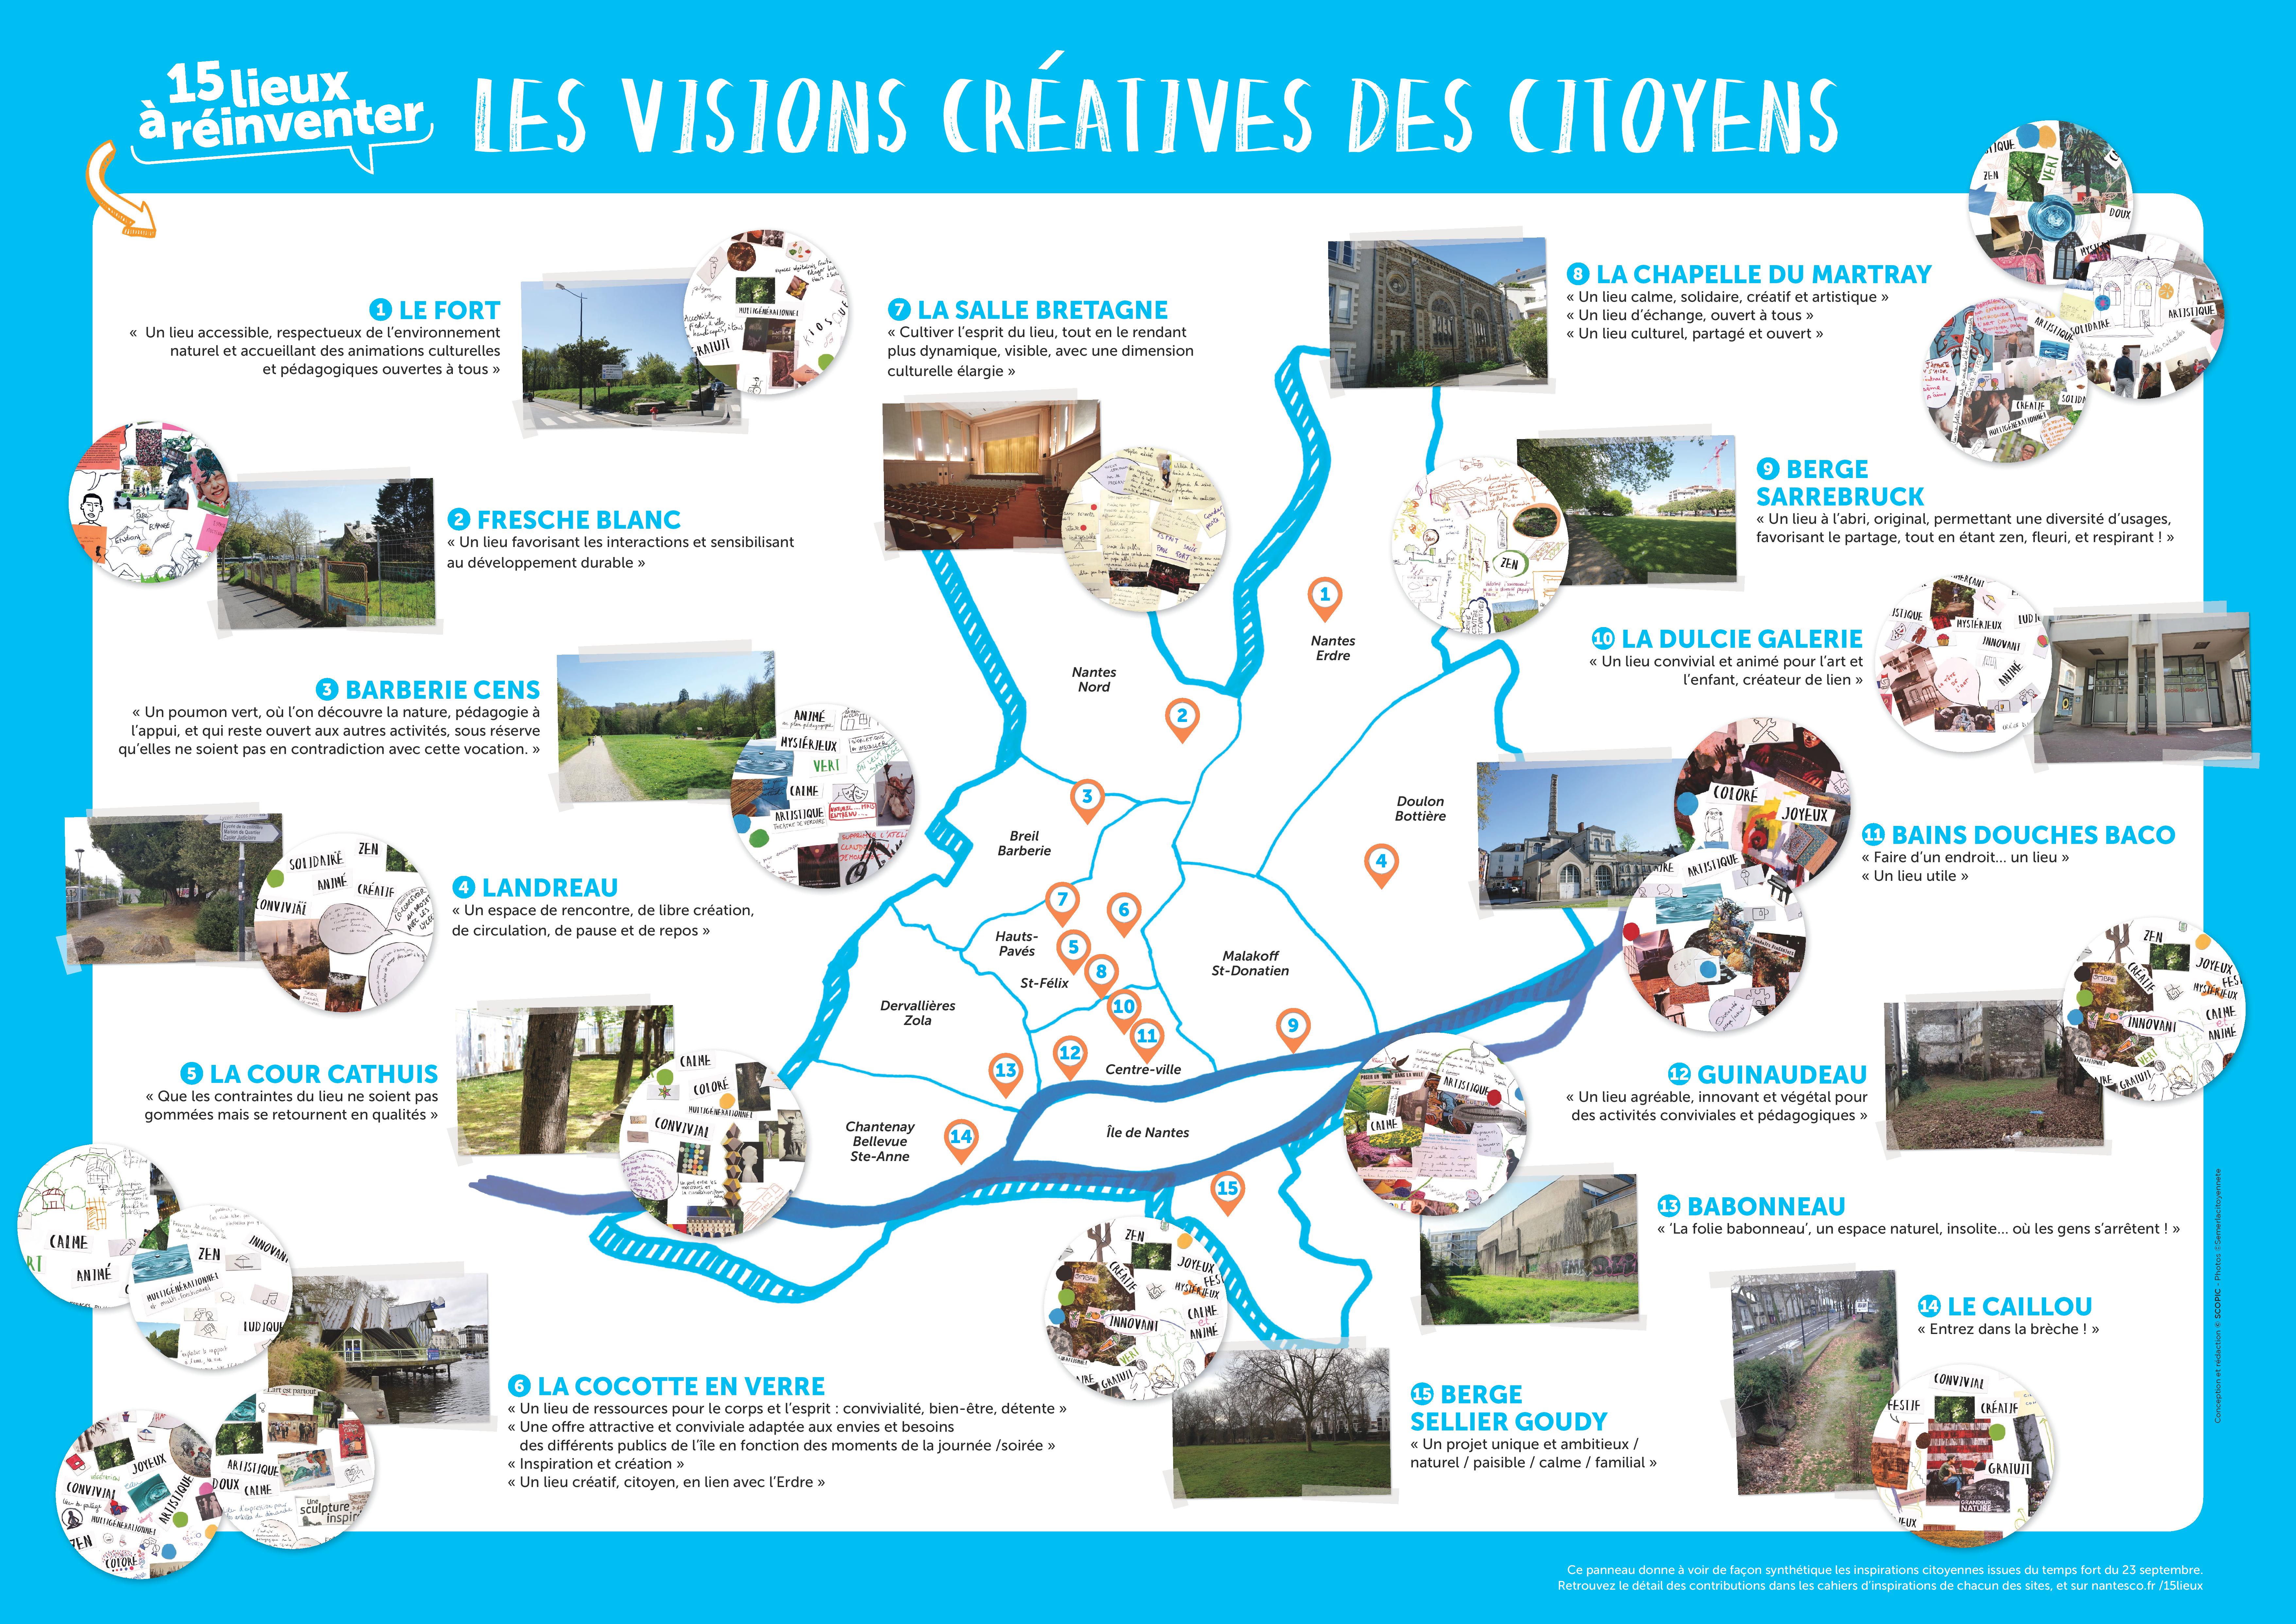 Nantes - Cartographie des "15 lieux à réinventer"